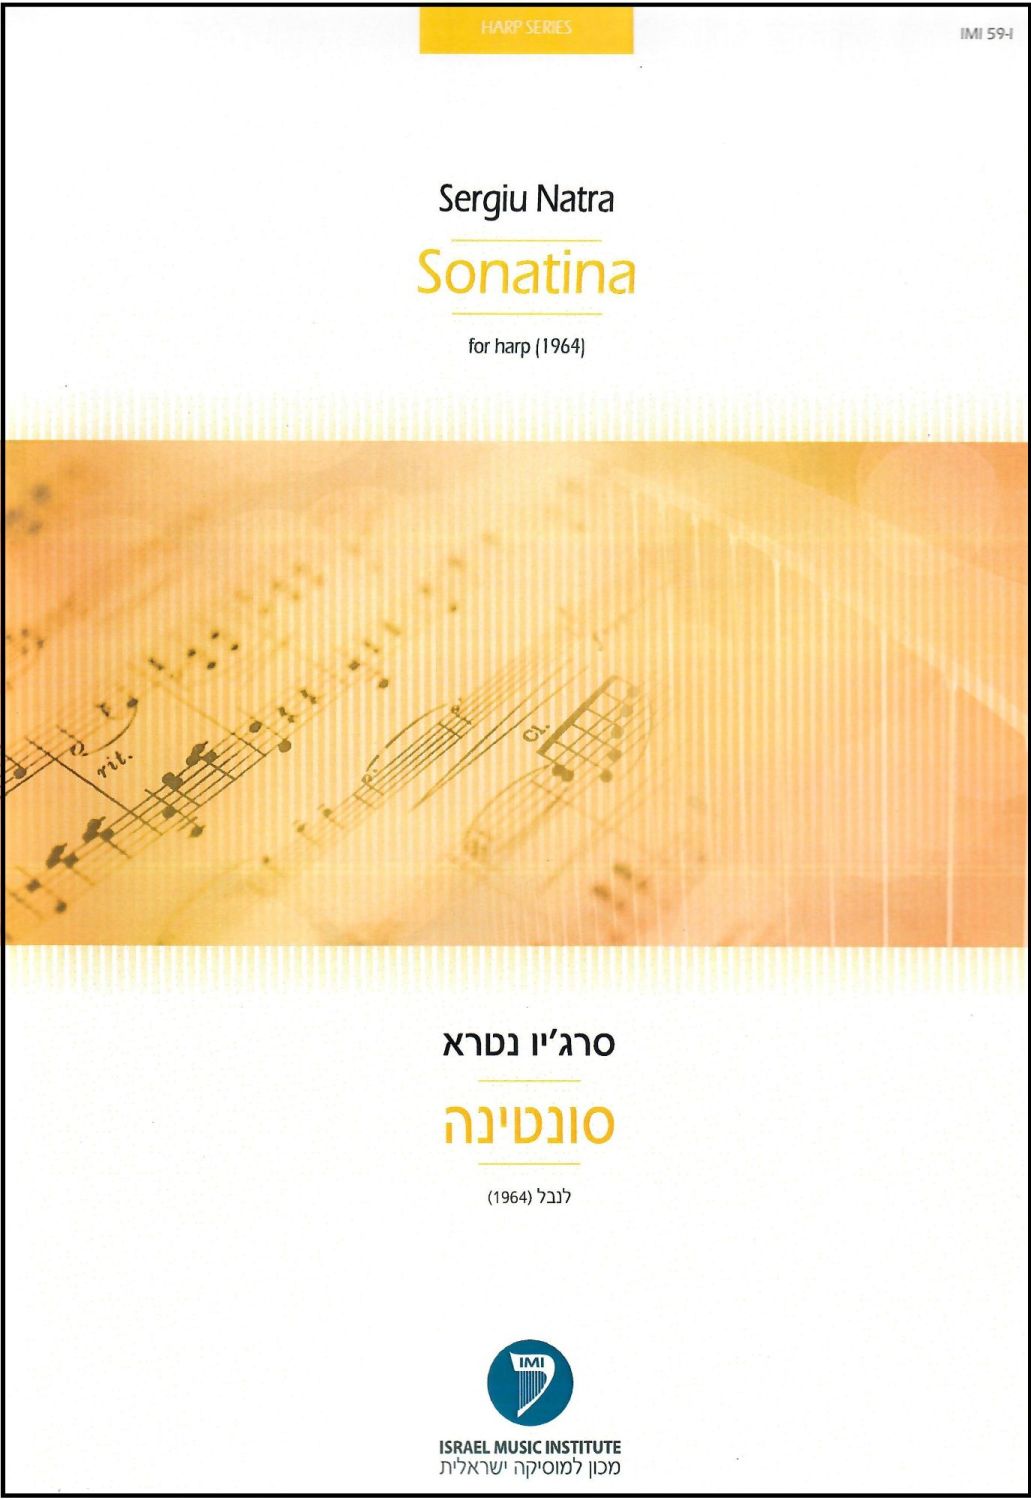 Sonatina for Harp by Sergiu Natra